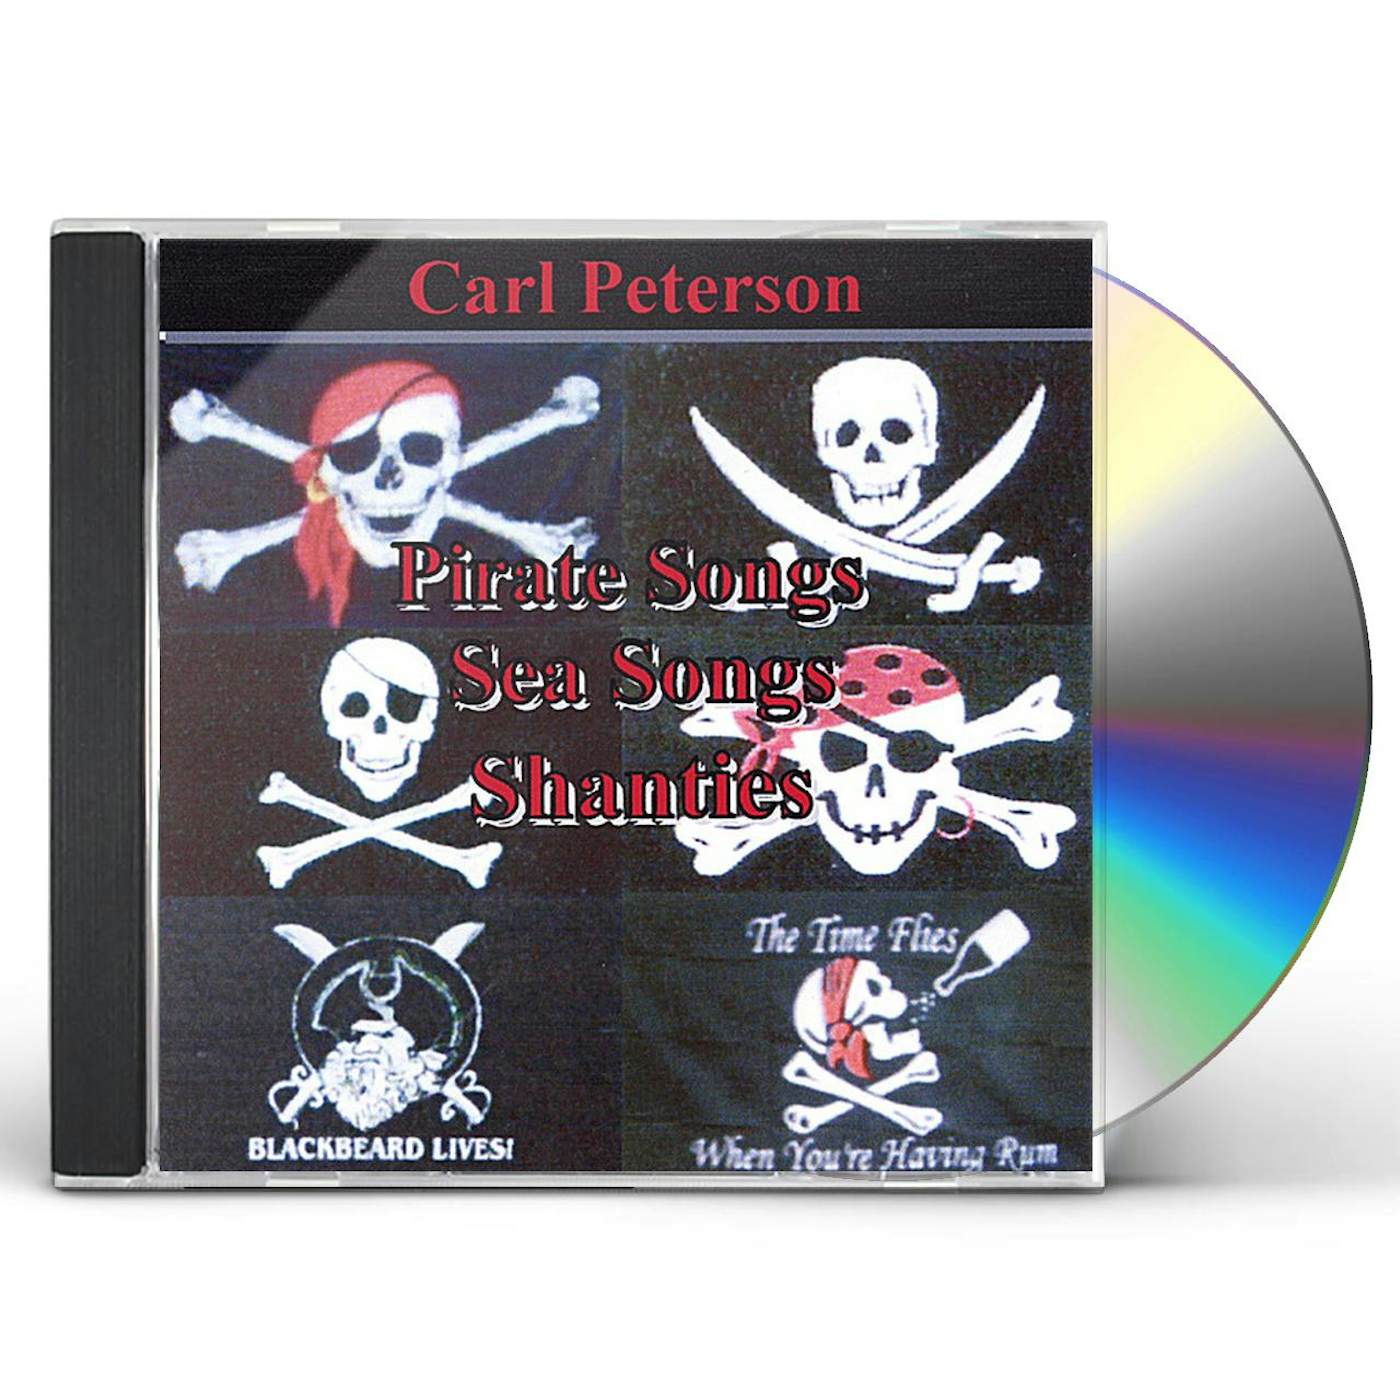 Carl Peterson PIRATE SONGS SEA SONGS & SHANTIES CD